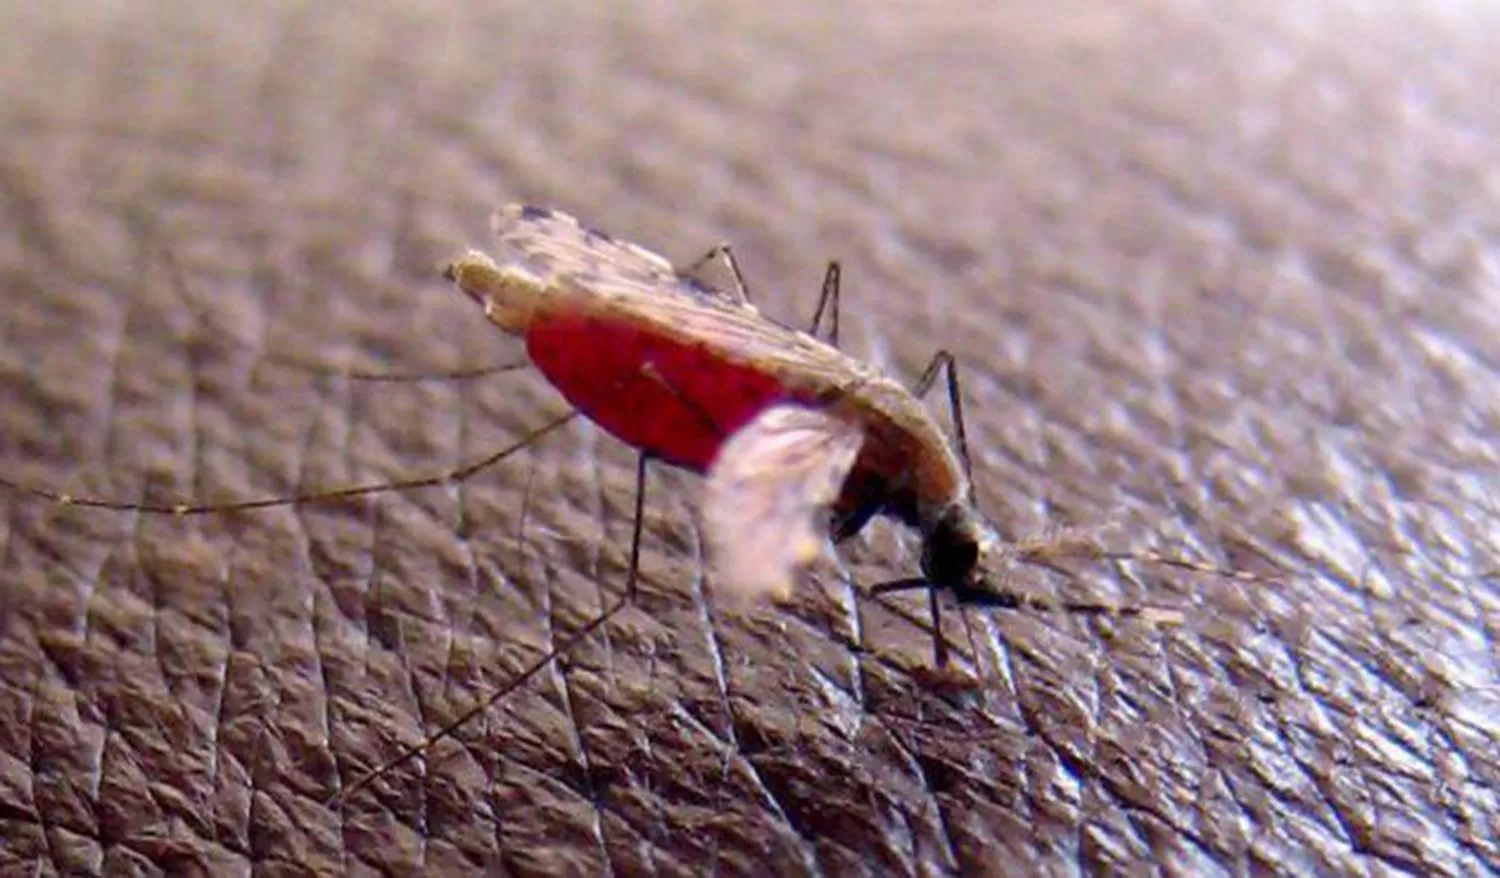 La otra epidemia: la Cifra de muertes por malaria superará a la de covid-19 en el África subsahariana